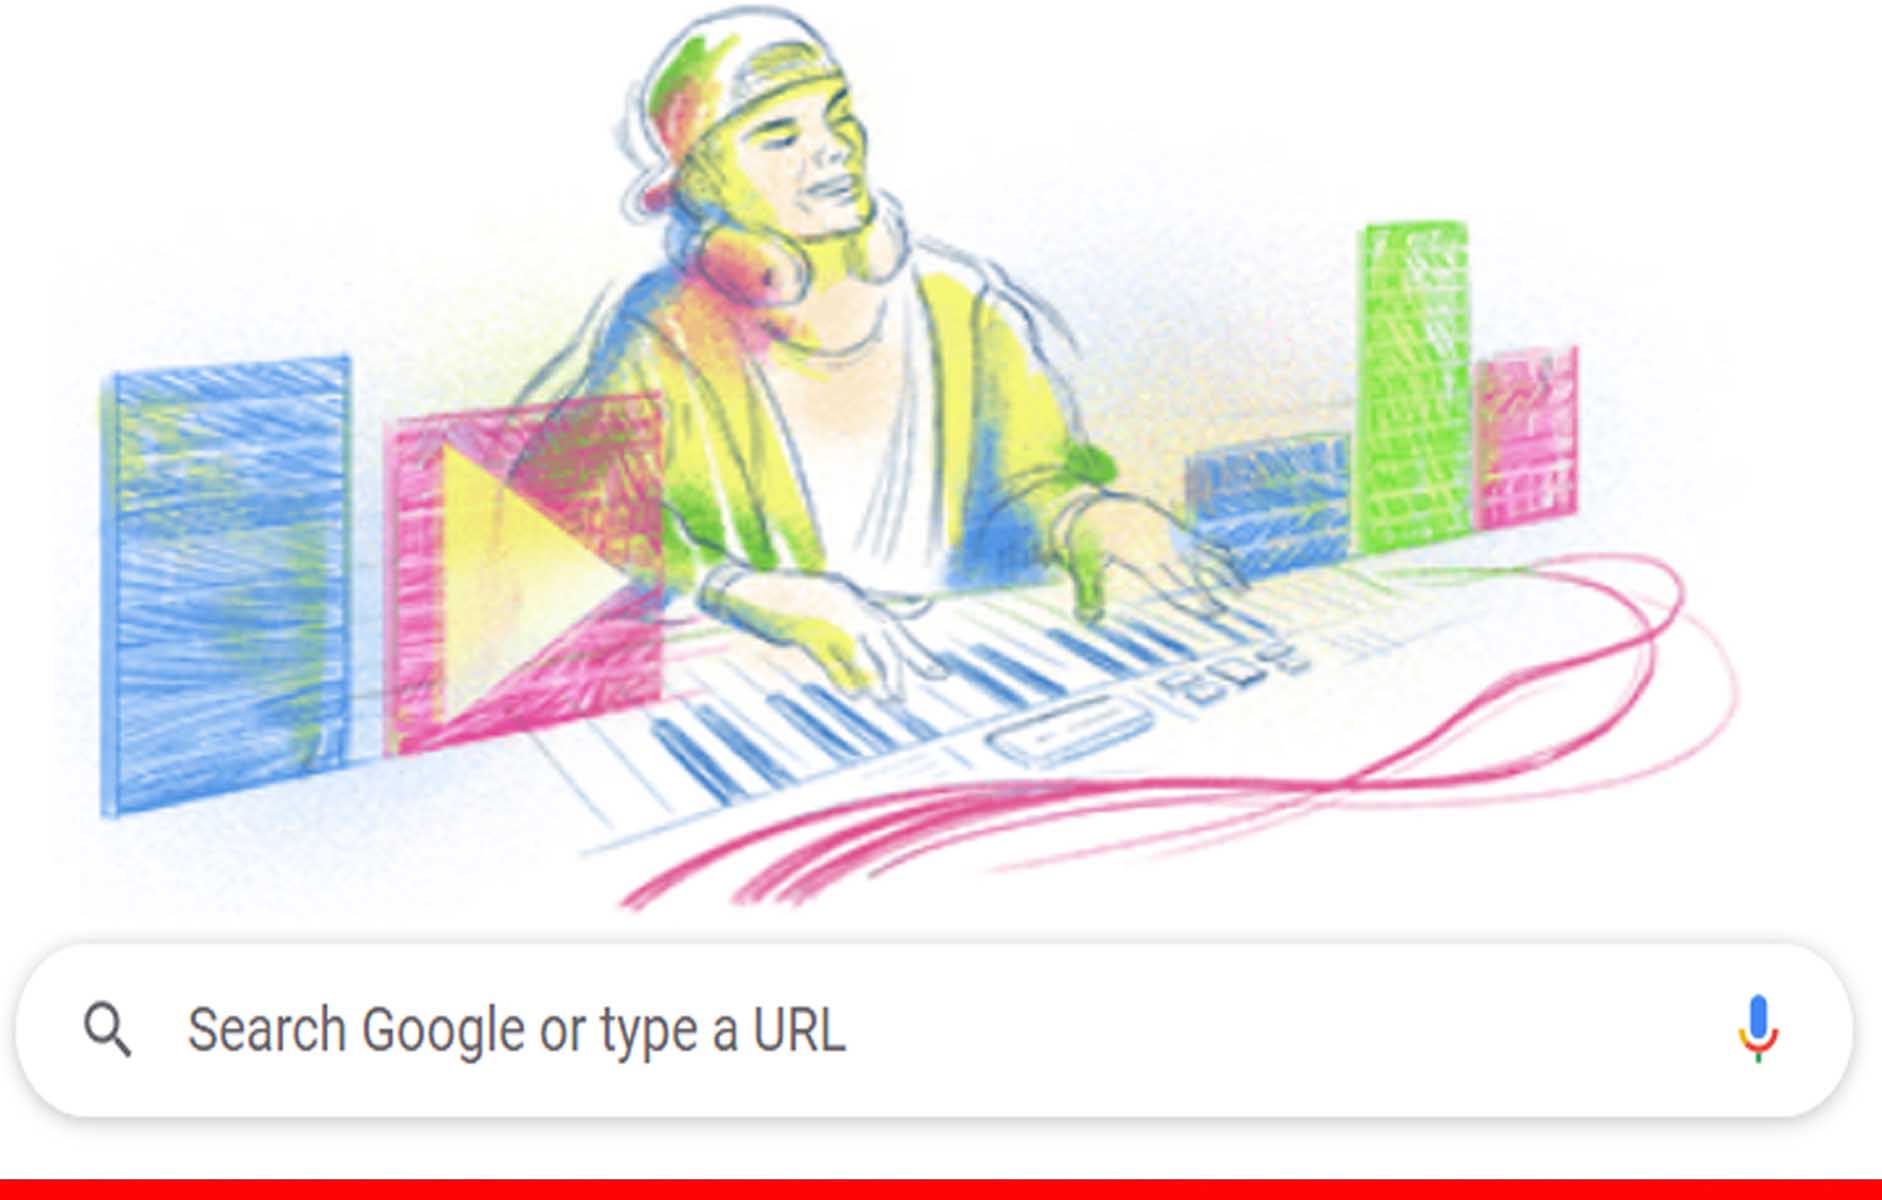 डीजे टिम बर्गलिंग उर्फ एविसी का जन्मदिन, गूगल ने शानदार डूडल किया समर्पित